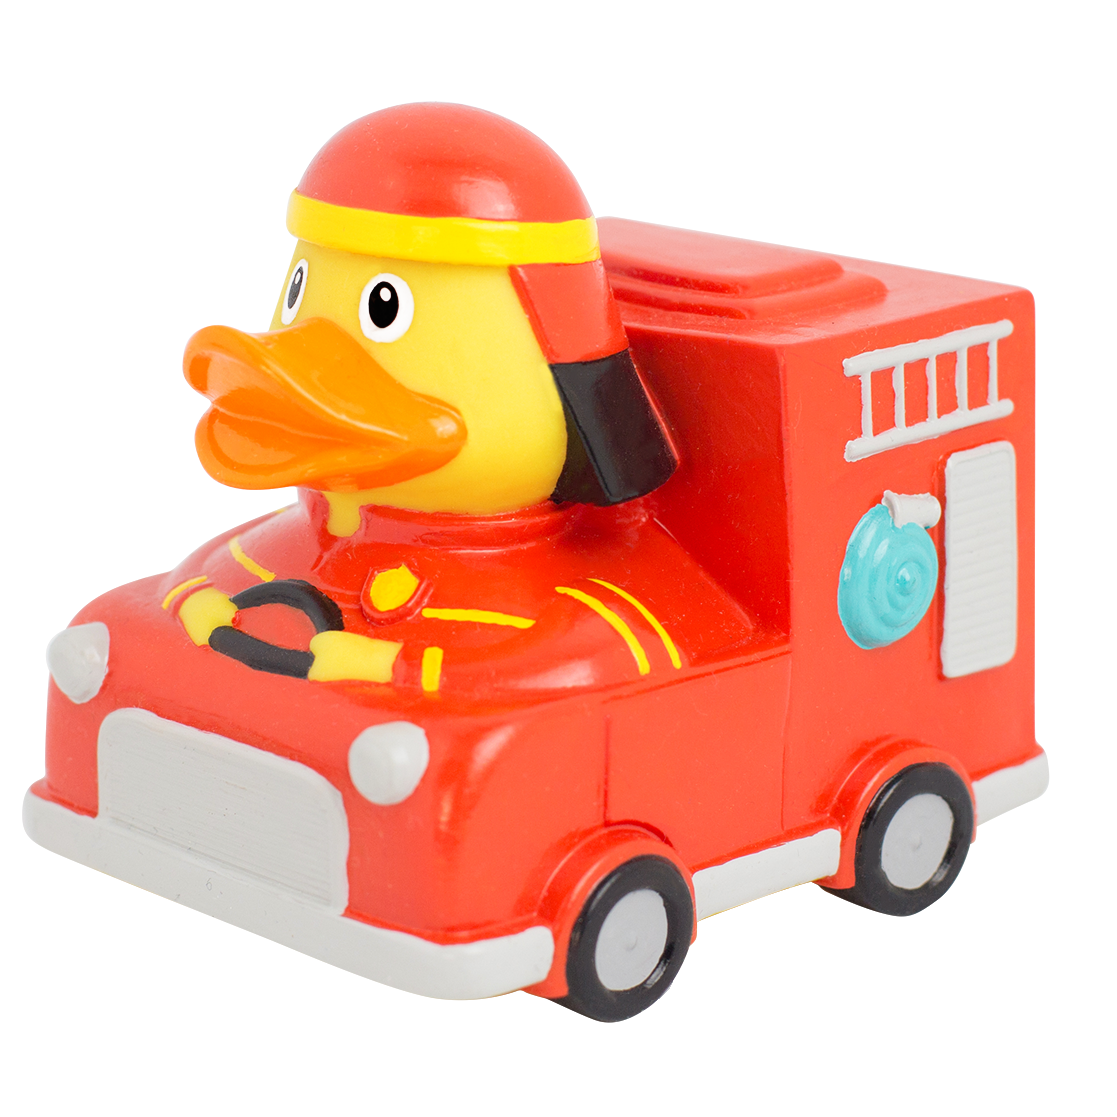 Duck Fire Truck